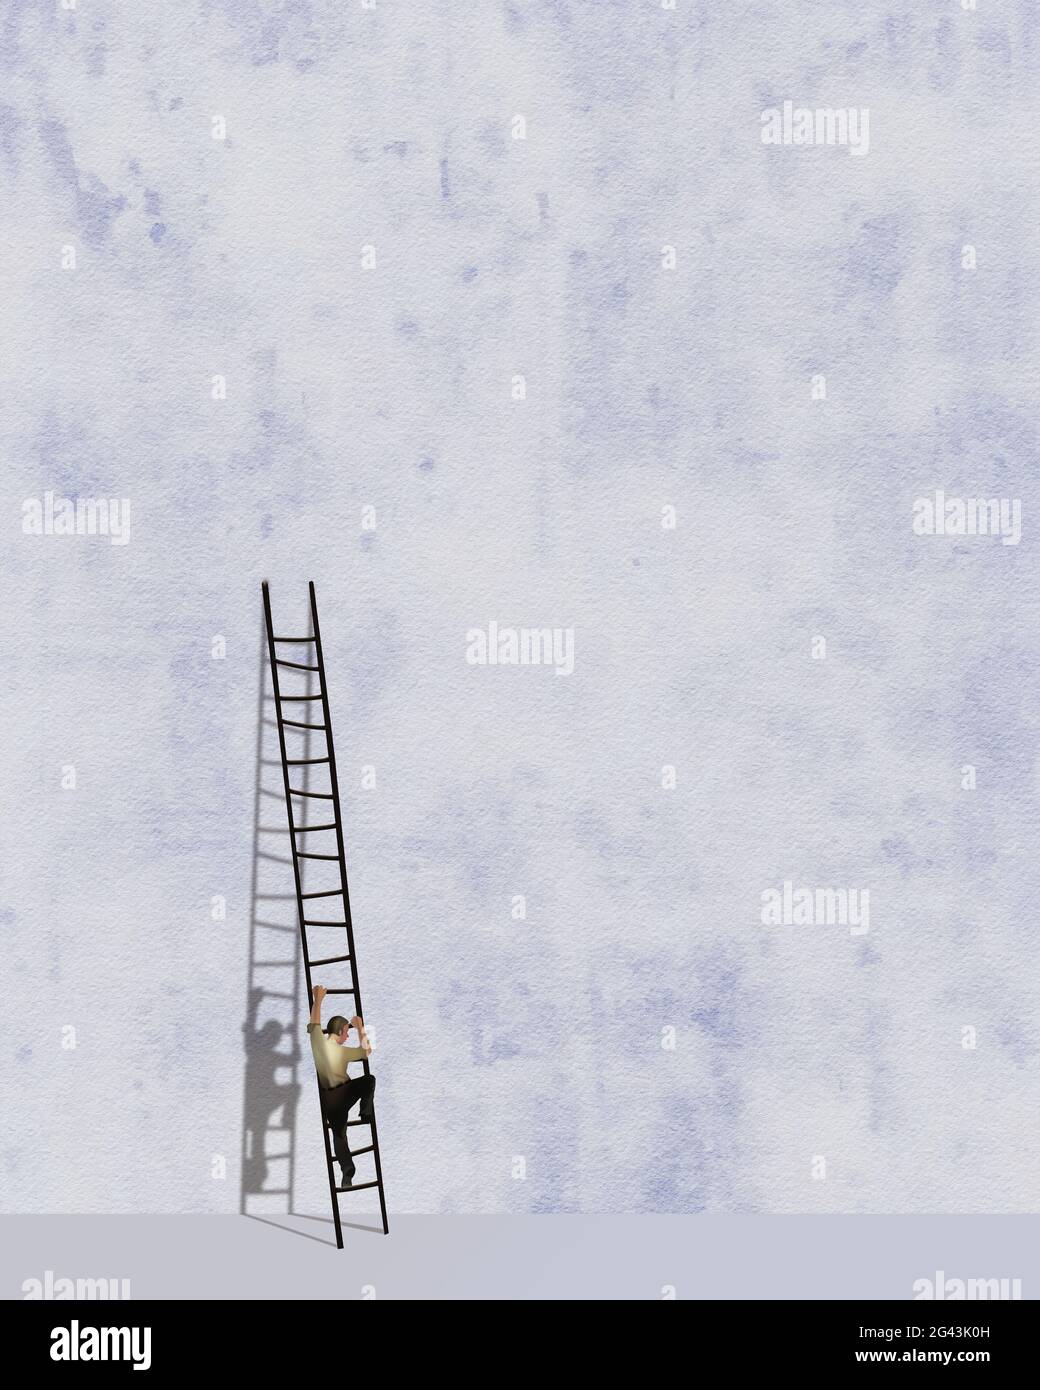 Un uomo sale una scala che si appoggia contro un alto muro in questa illustrazione 3-d sulle sfide e lo sforzo futile. Foto Stock